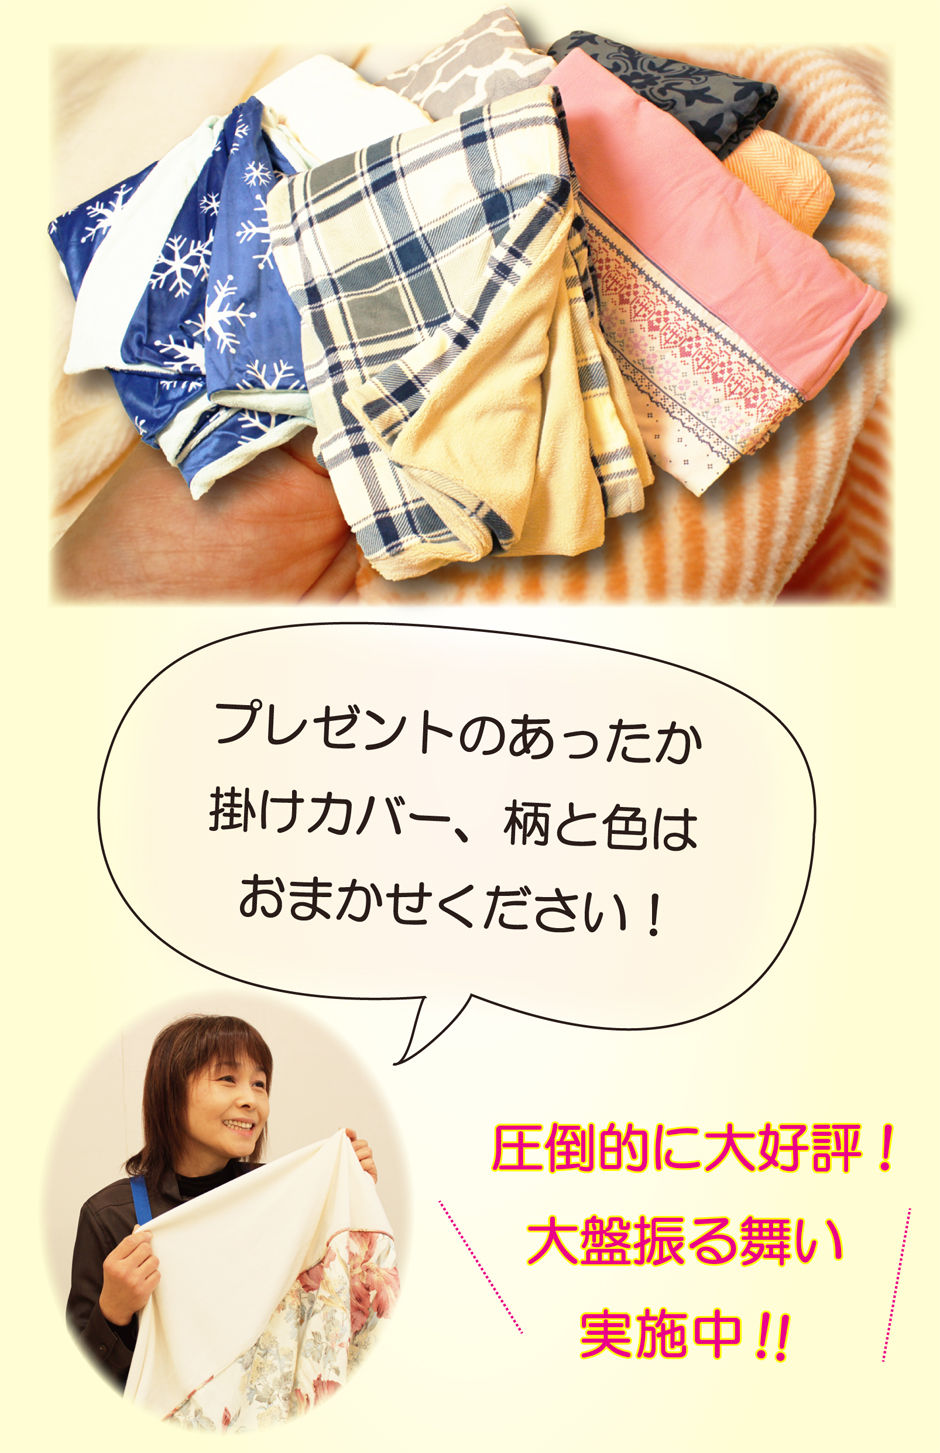 羽毛布団シングルサイズ39800円の特典2